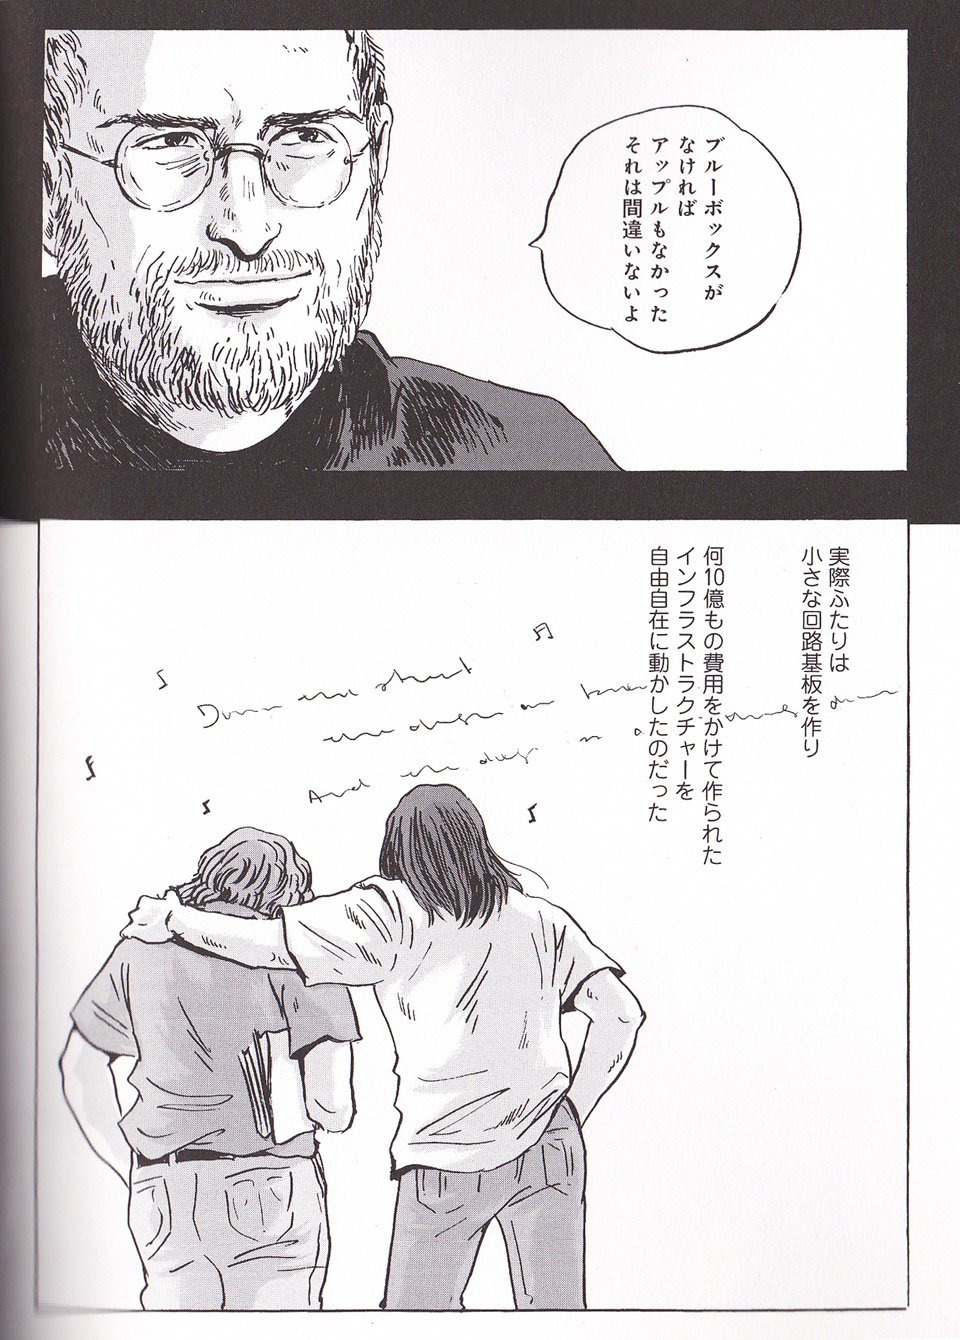 So, How’s That Japanese Manga On Steve Jobs?